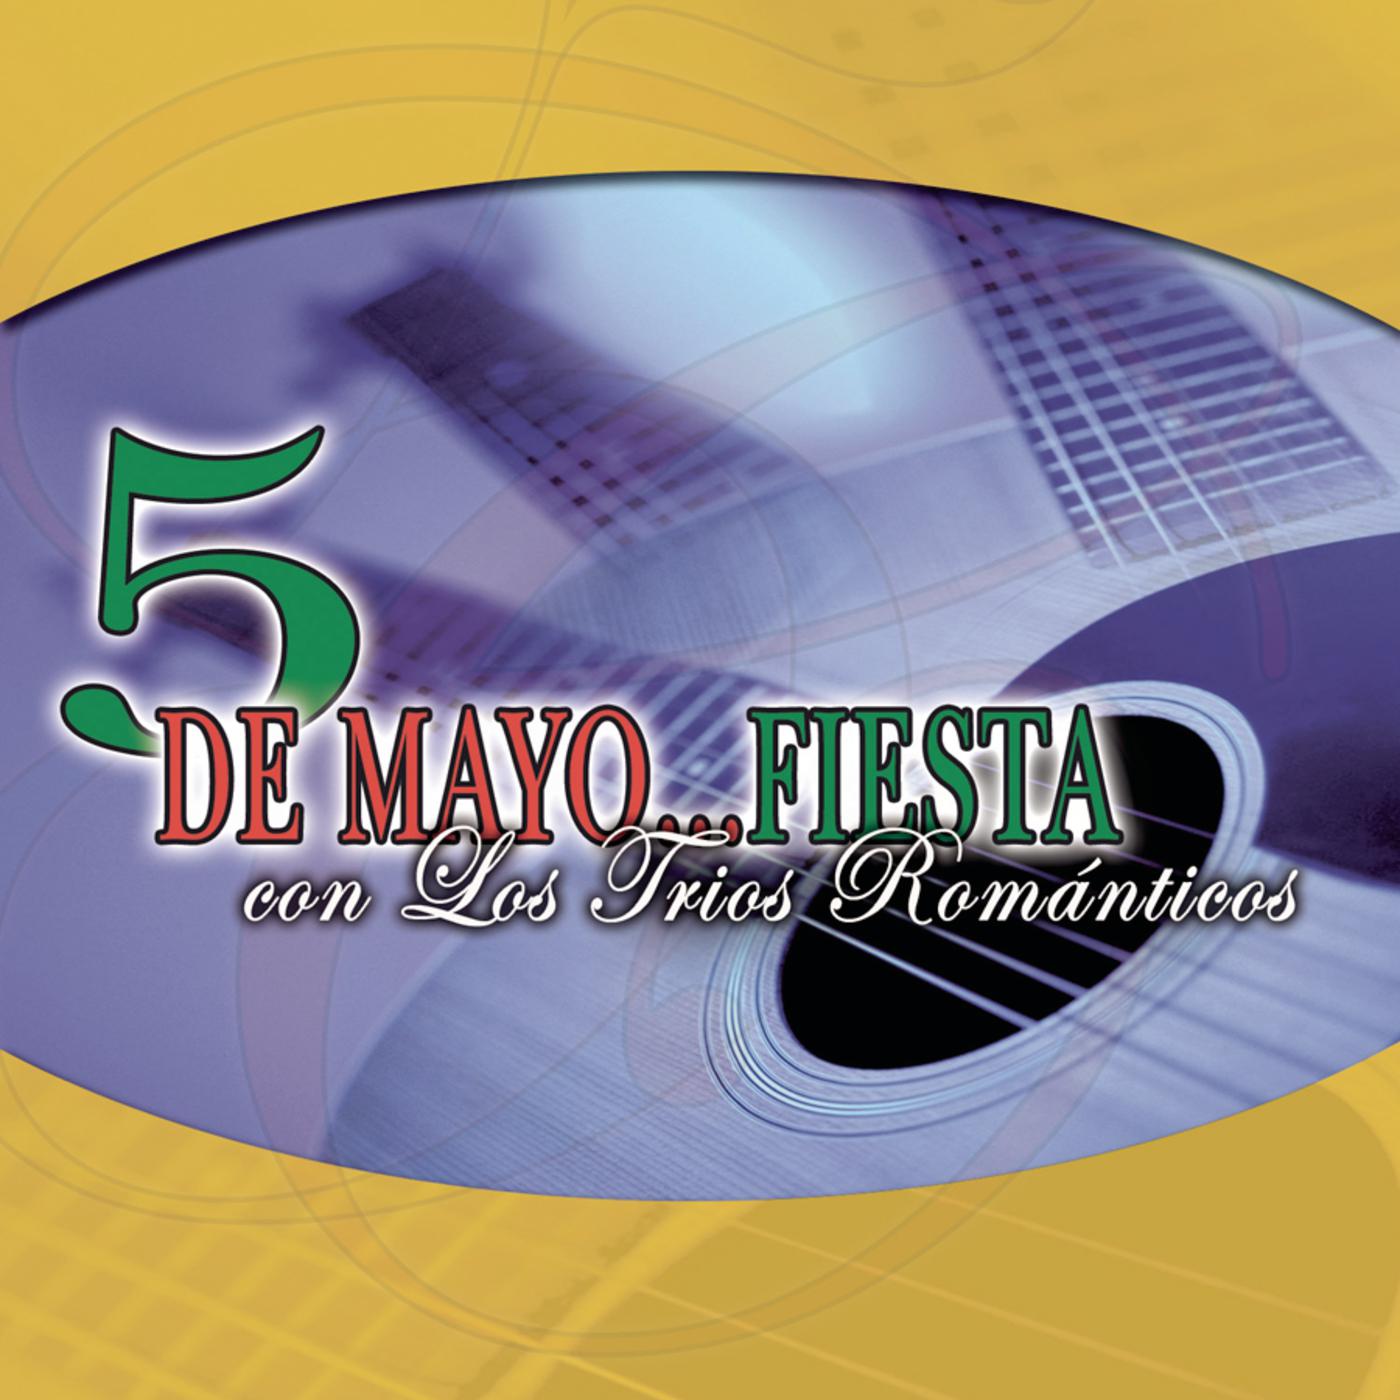 5 De Mayo  Fiesta Con Los Trios Roma nticos